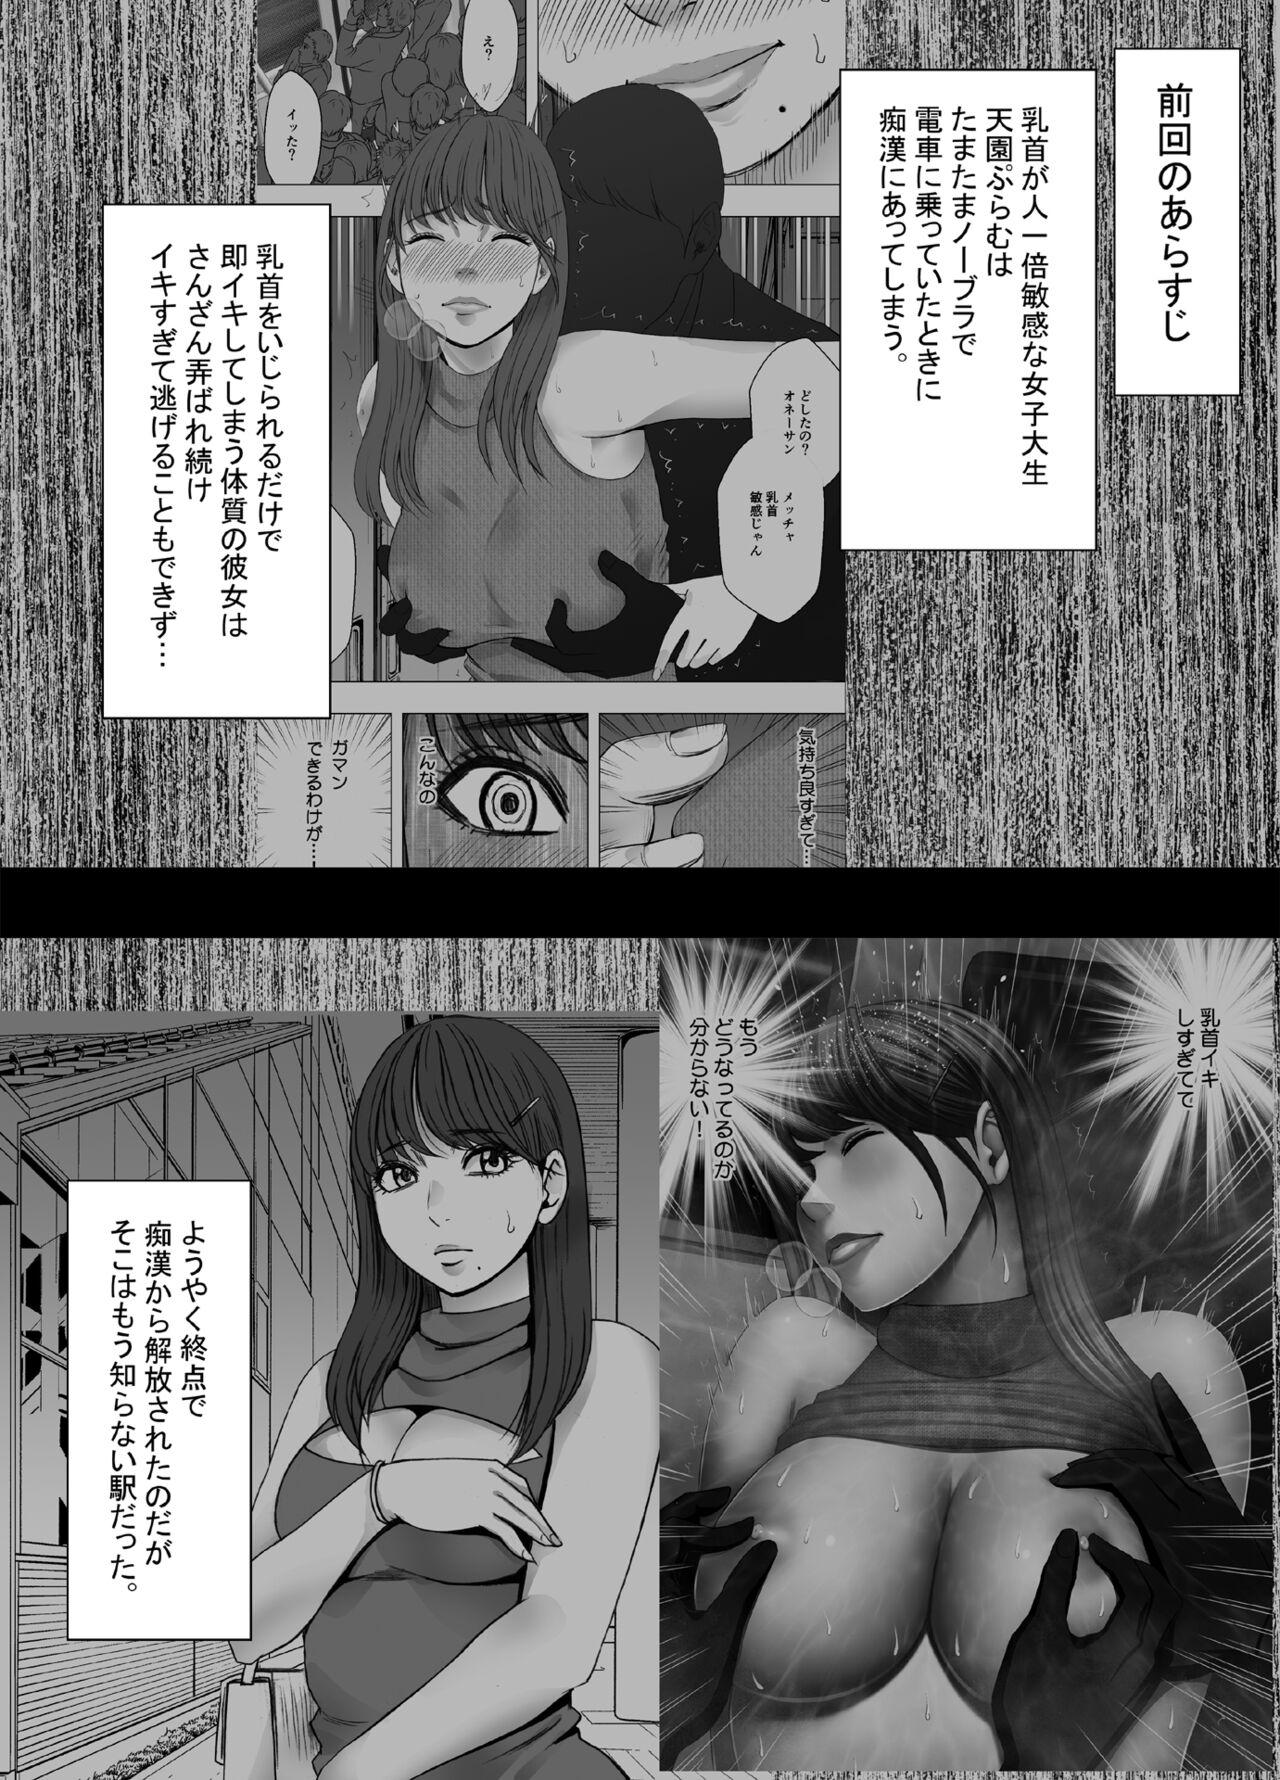 Parties Chikubi de Sokuiki suru Joshidaisei 4 - Original Leche - Page 2